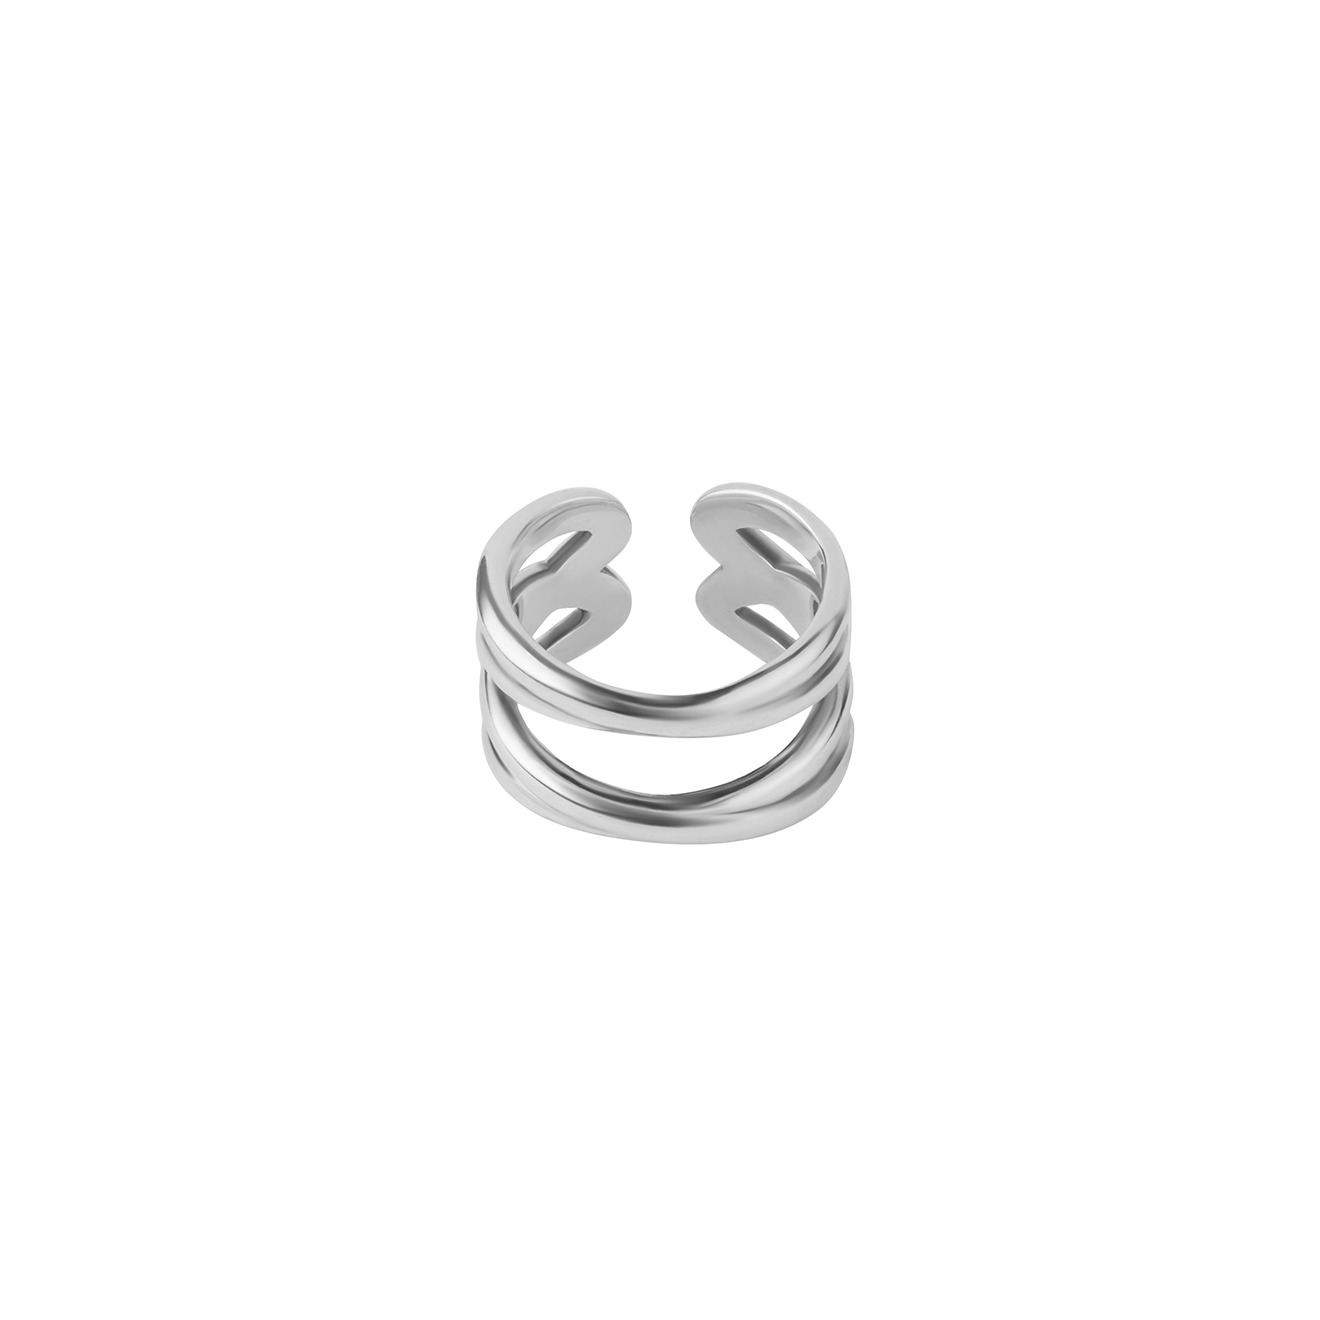 Philippe Audibert Незамкнутое двойное кольцо, покрытое серебром philippe audibert покрытое серебром колье wilna с шариками